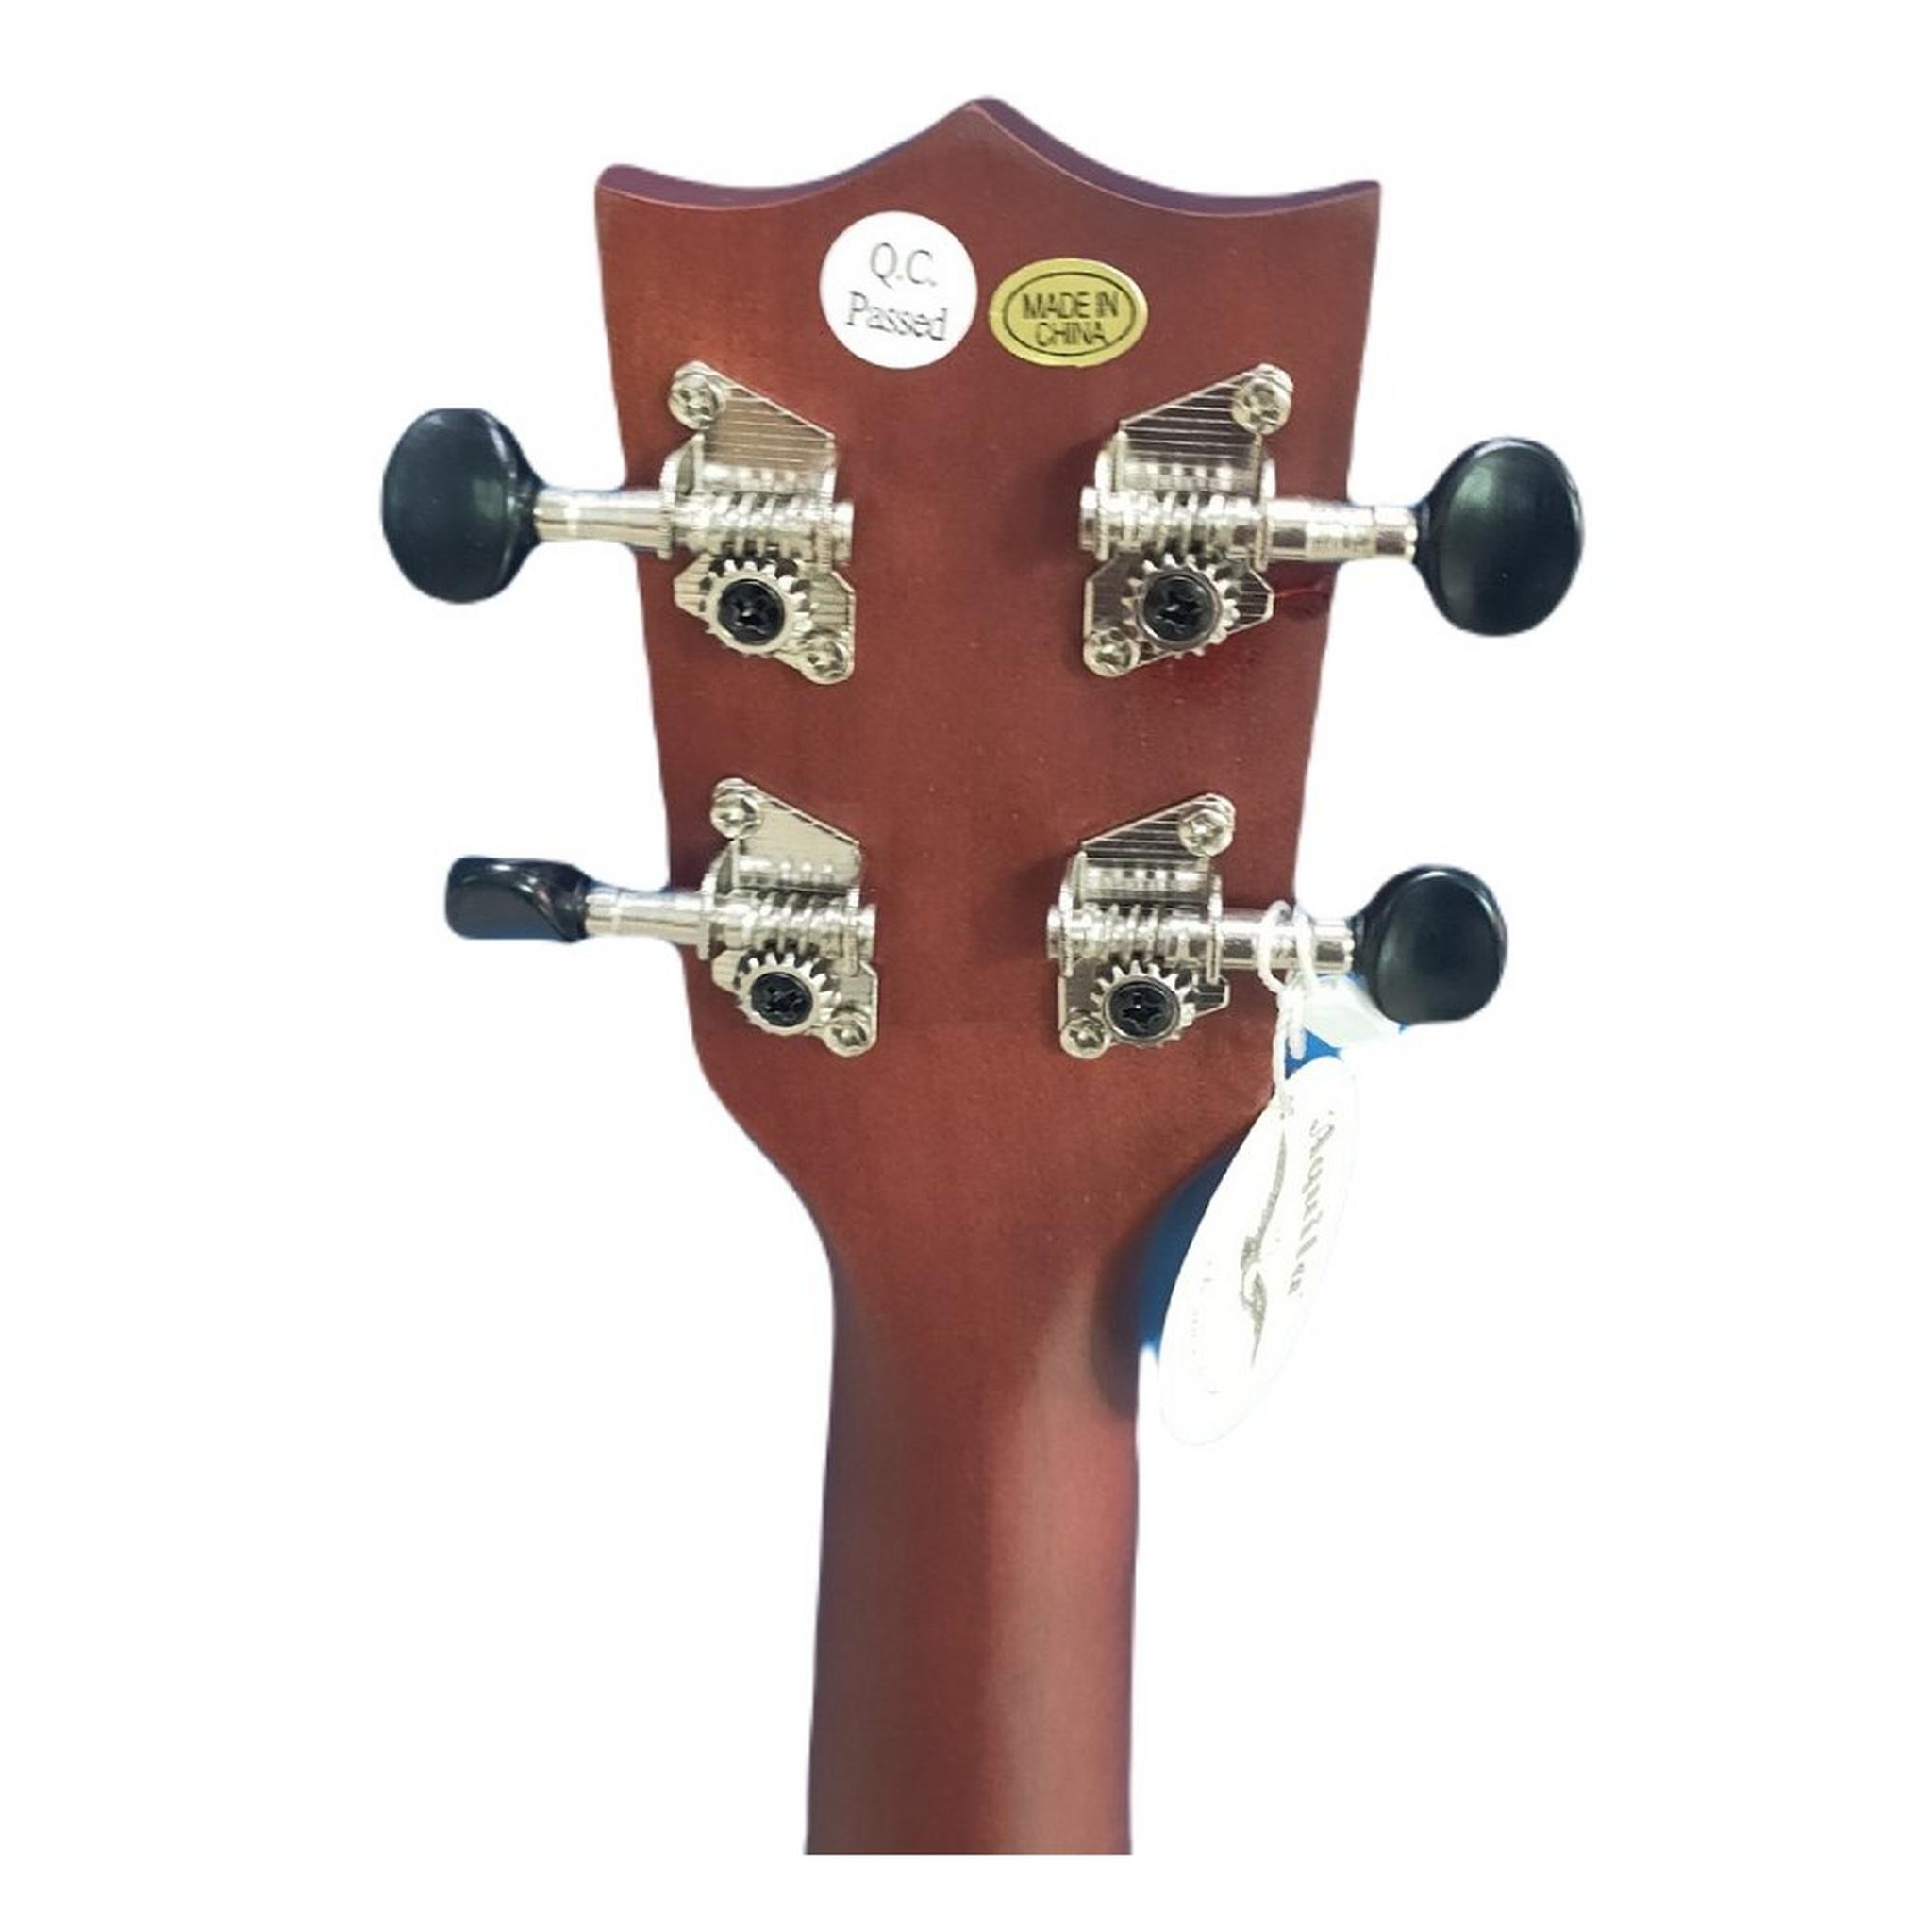 Wansa Acoustic Ukelele Guitar